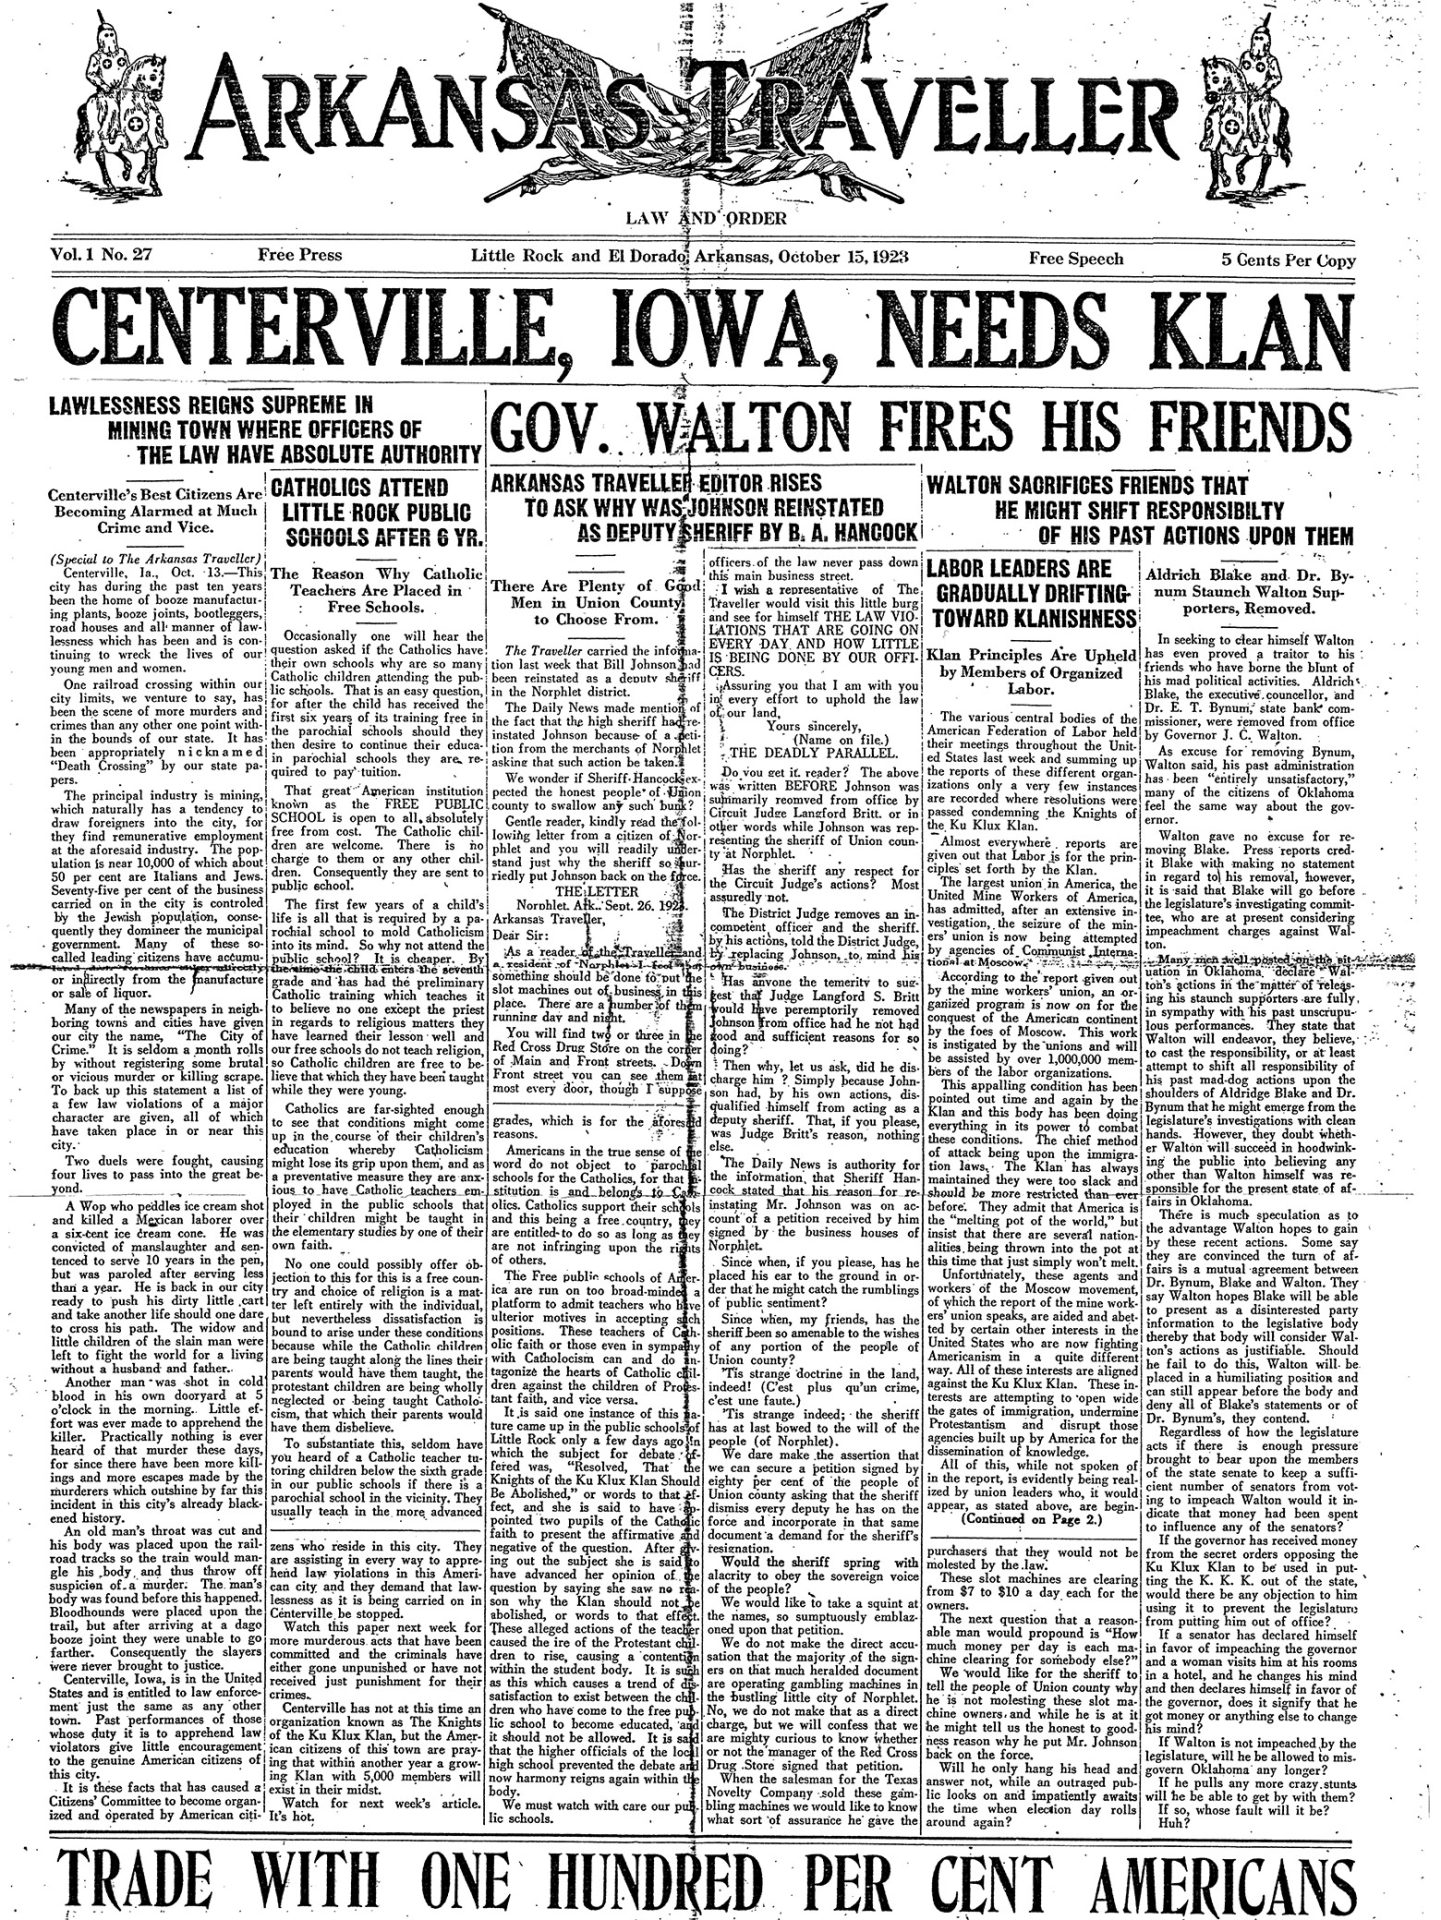 "Centerville Iowa Needs Klan" newspaper clipping